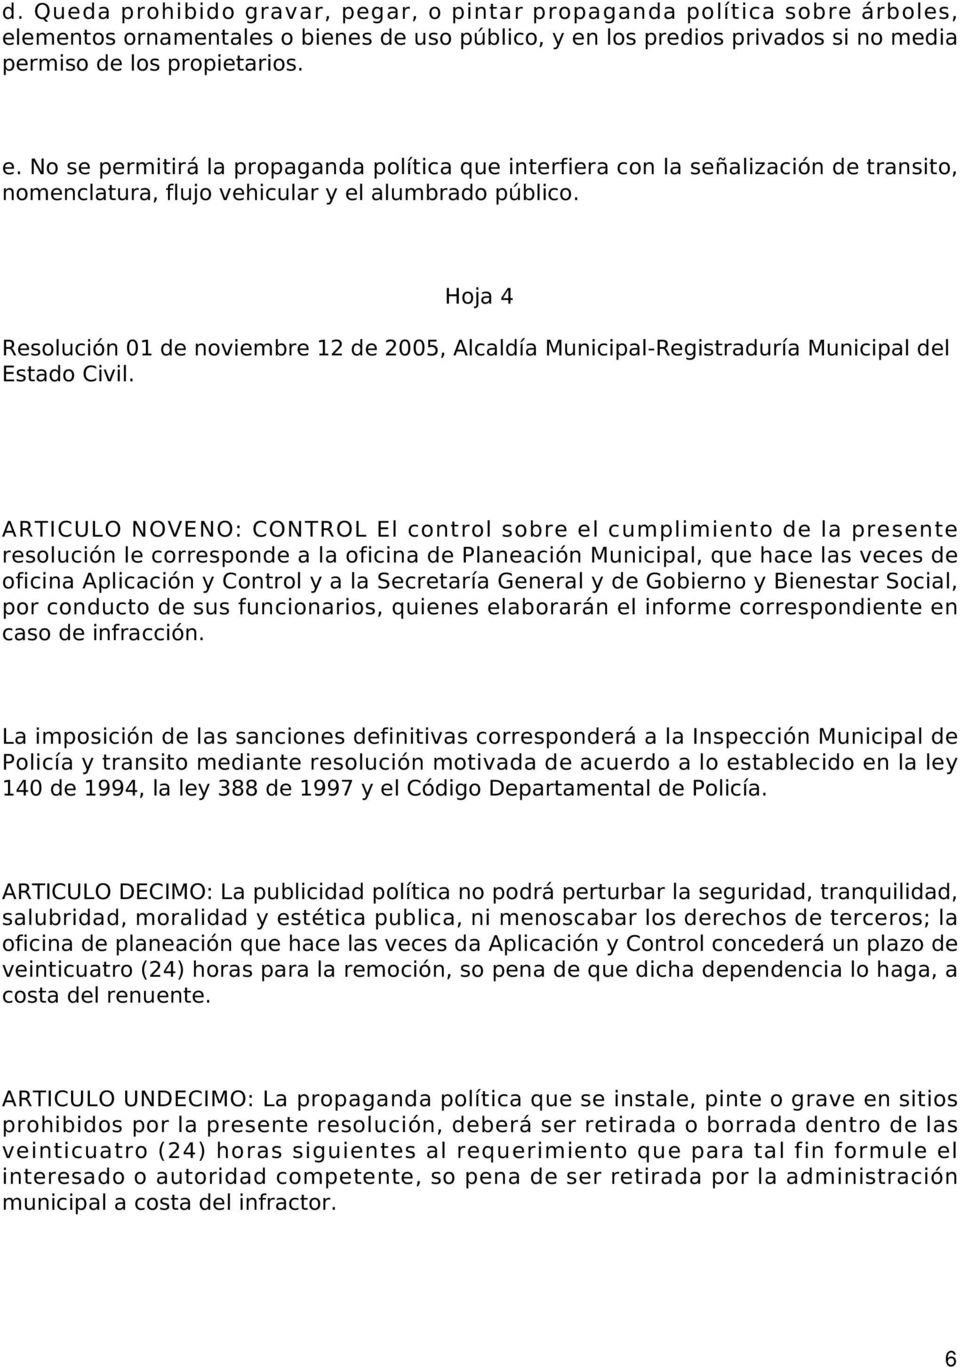 Hoja 4 Resolución 01 de noviembre 12 de 2005, Alcaldía Municipal-Registraduría Municipal del Estado Civil.